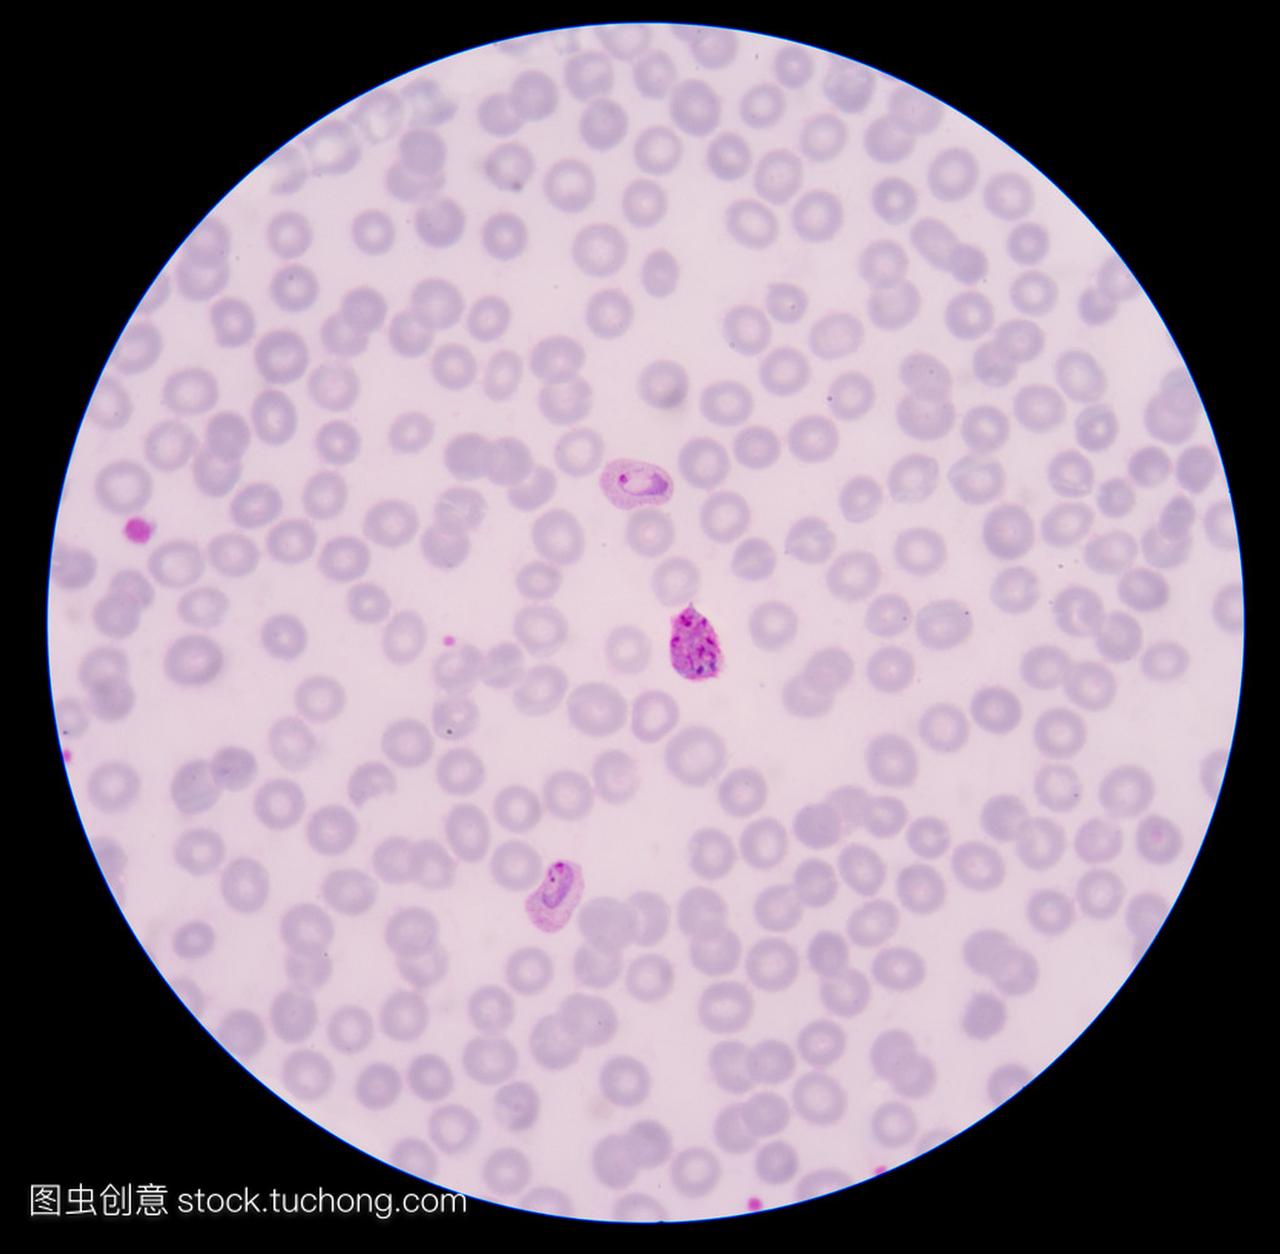 血液涂片薄膜疟疾寄生虫阳性